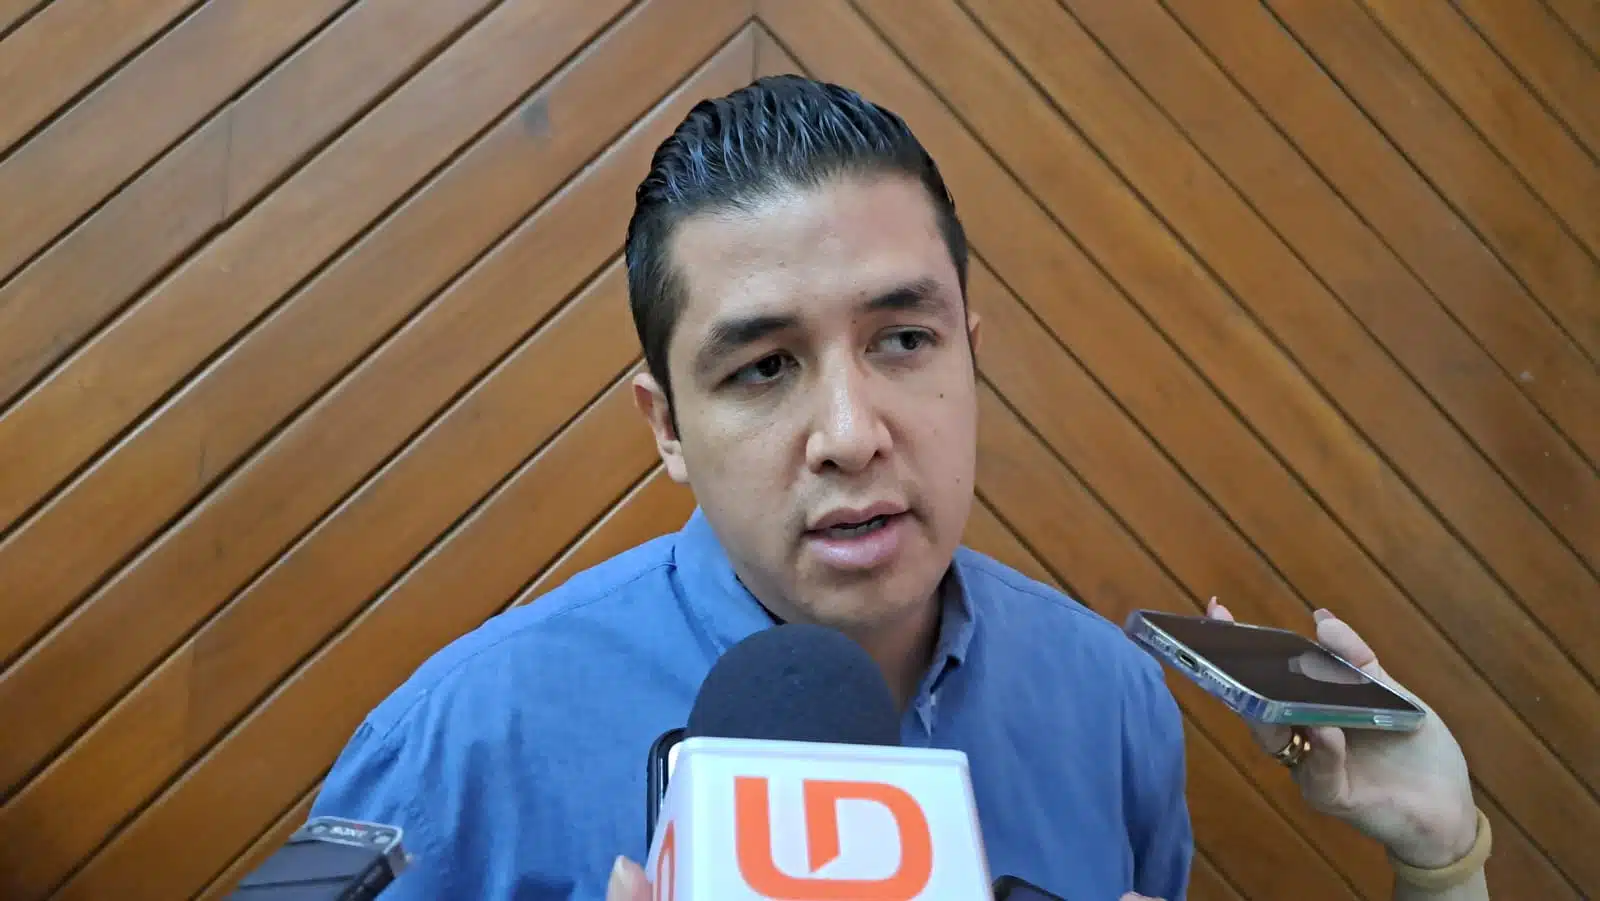 Donovan Quiñones exhorta a los turistas a presentar denuncias contra servidores públicos